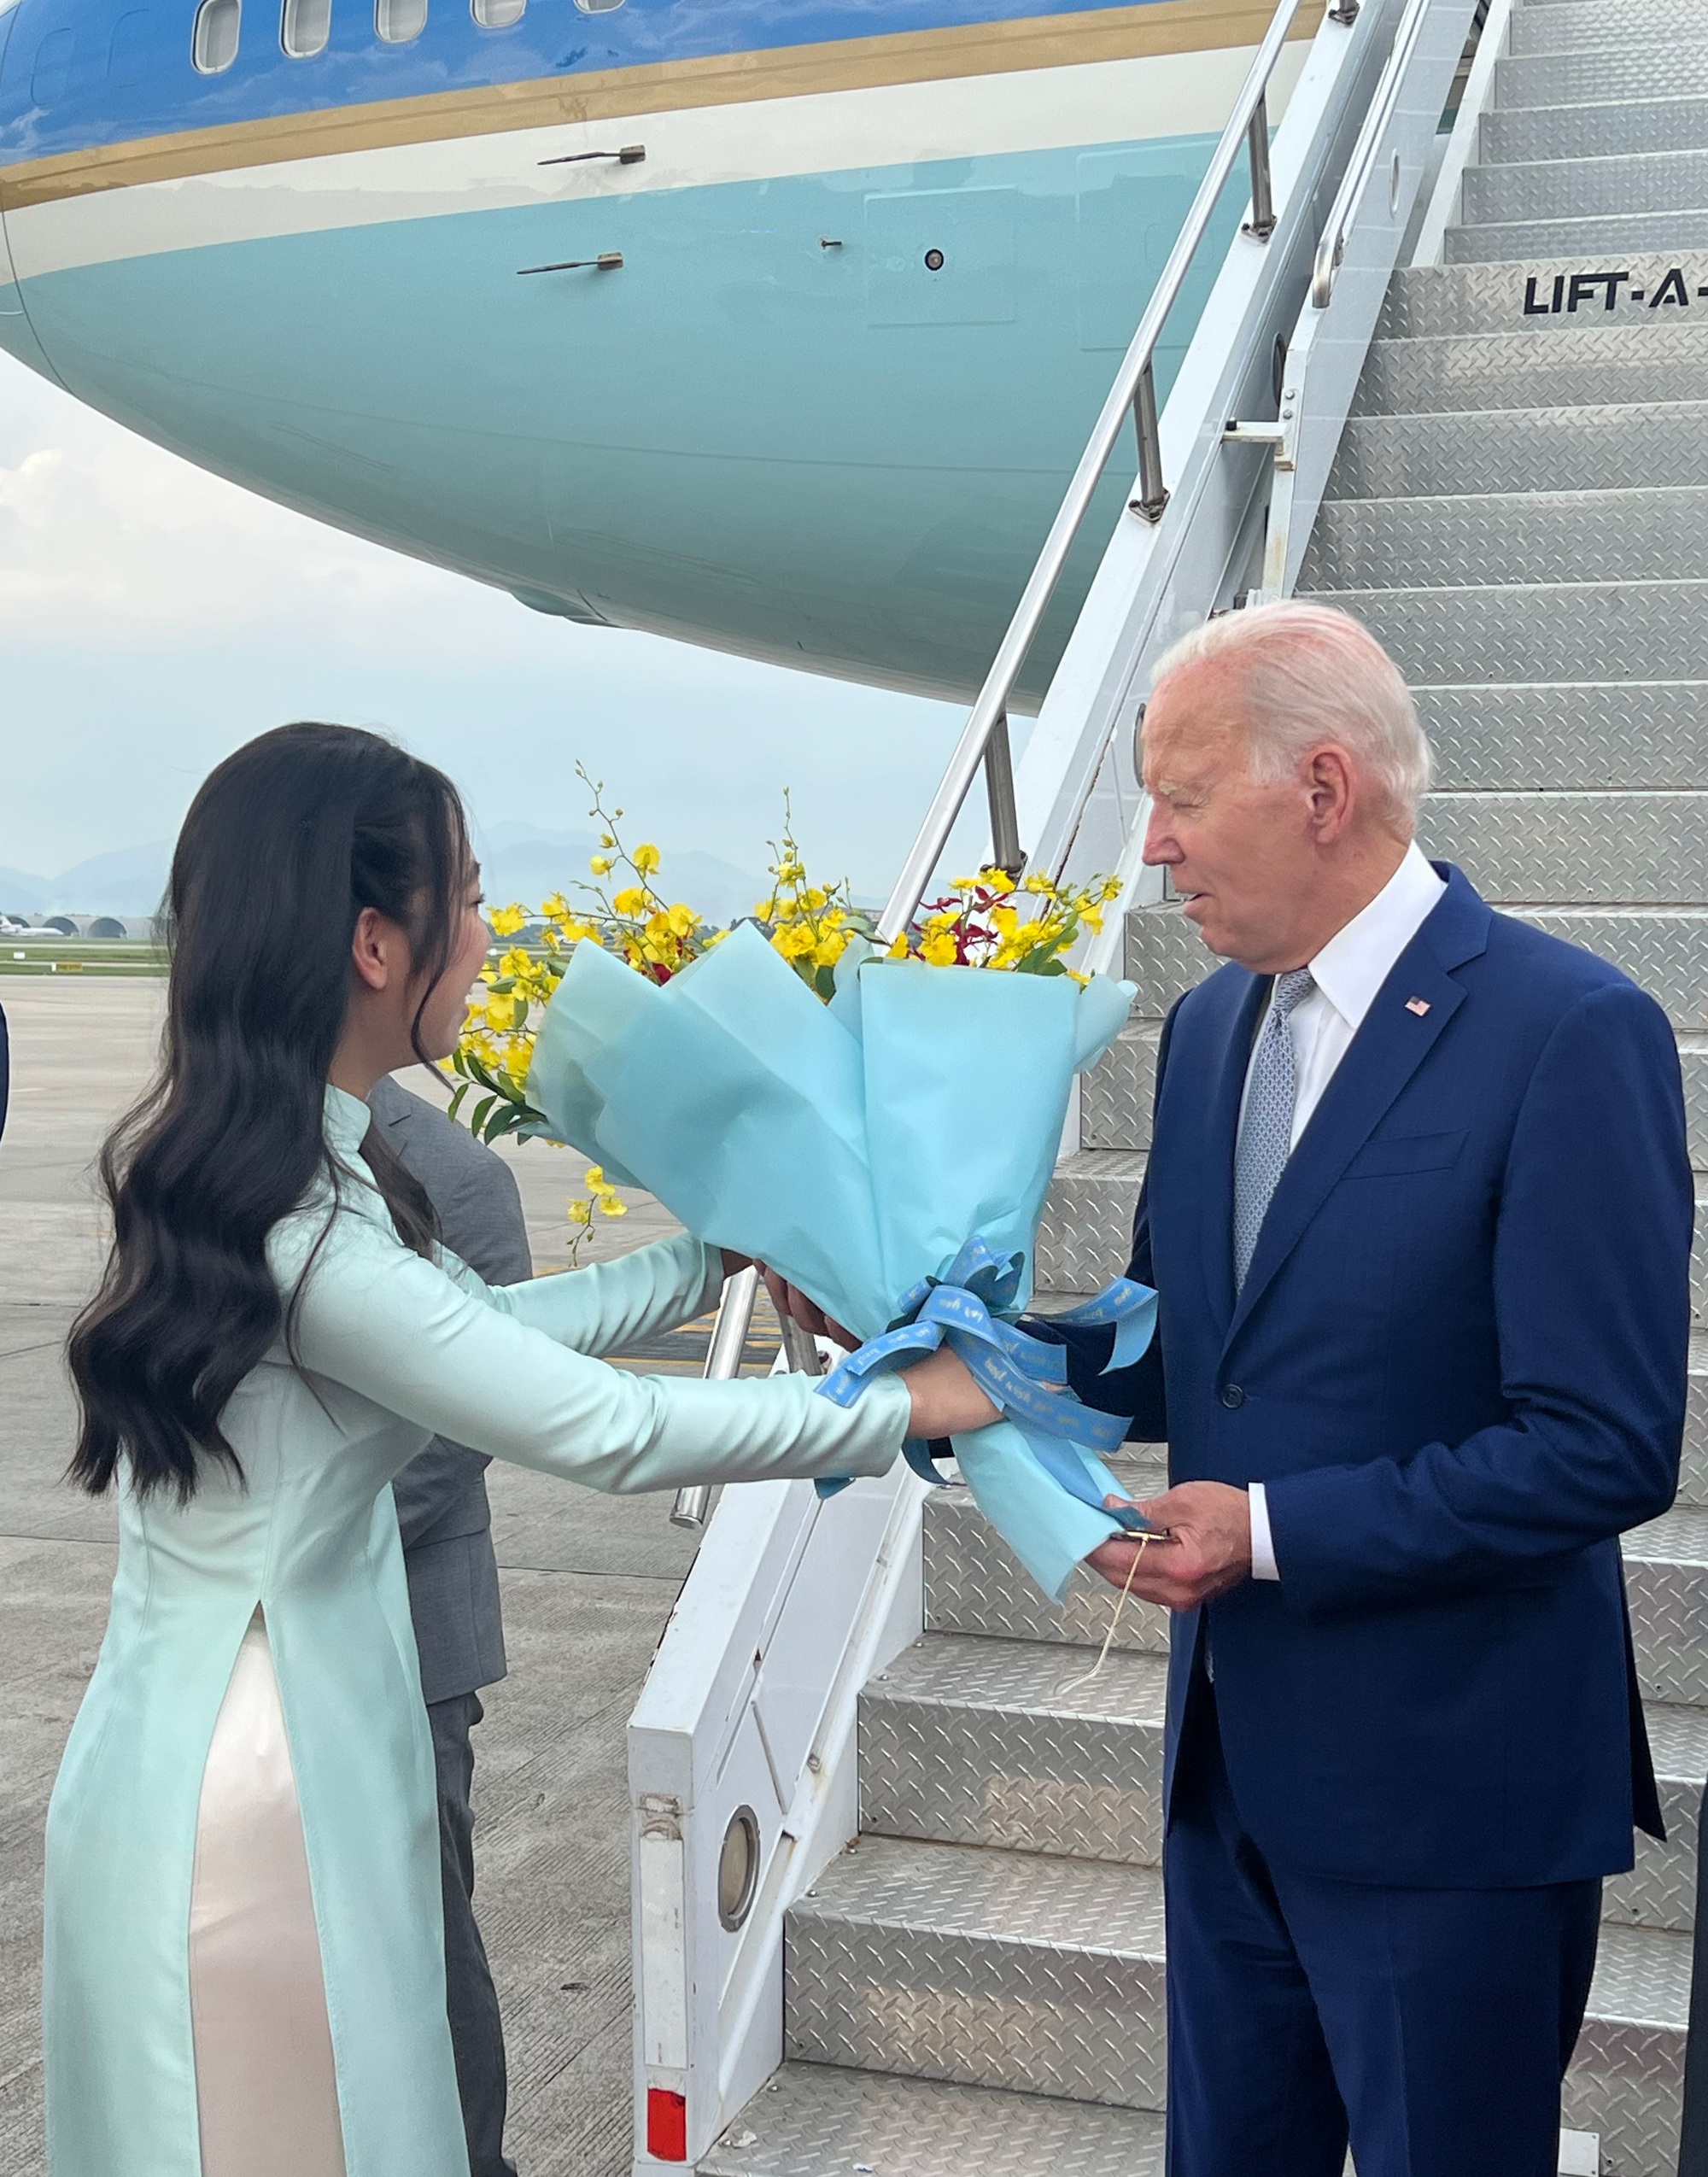 Nữ sinh được tặng hoa cho Tổng thống Mỹ Joe Biden chia sẻ những điều đã giúp ích cho em trong sự kiện quan trọng - Ảnh 1.